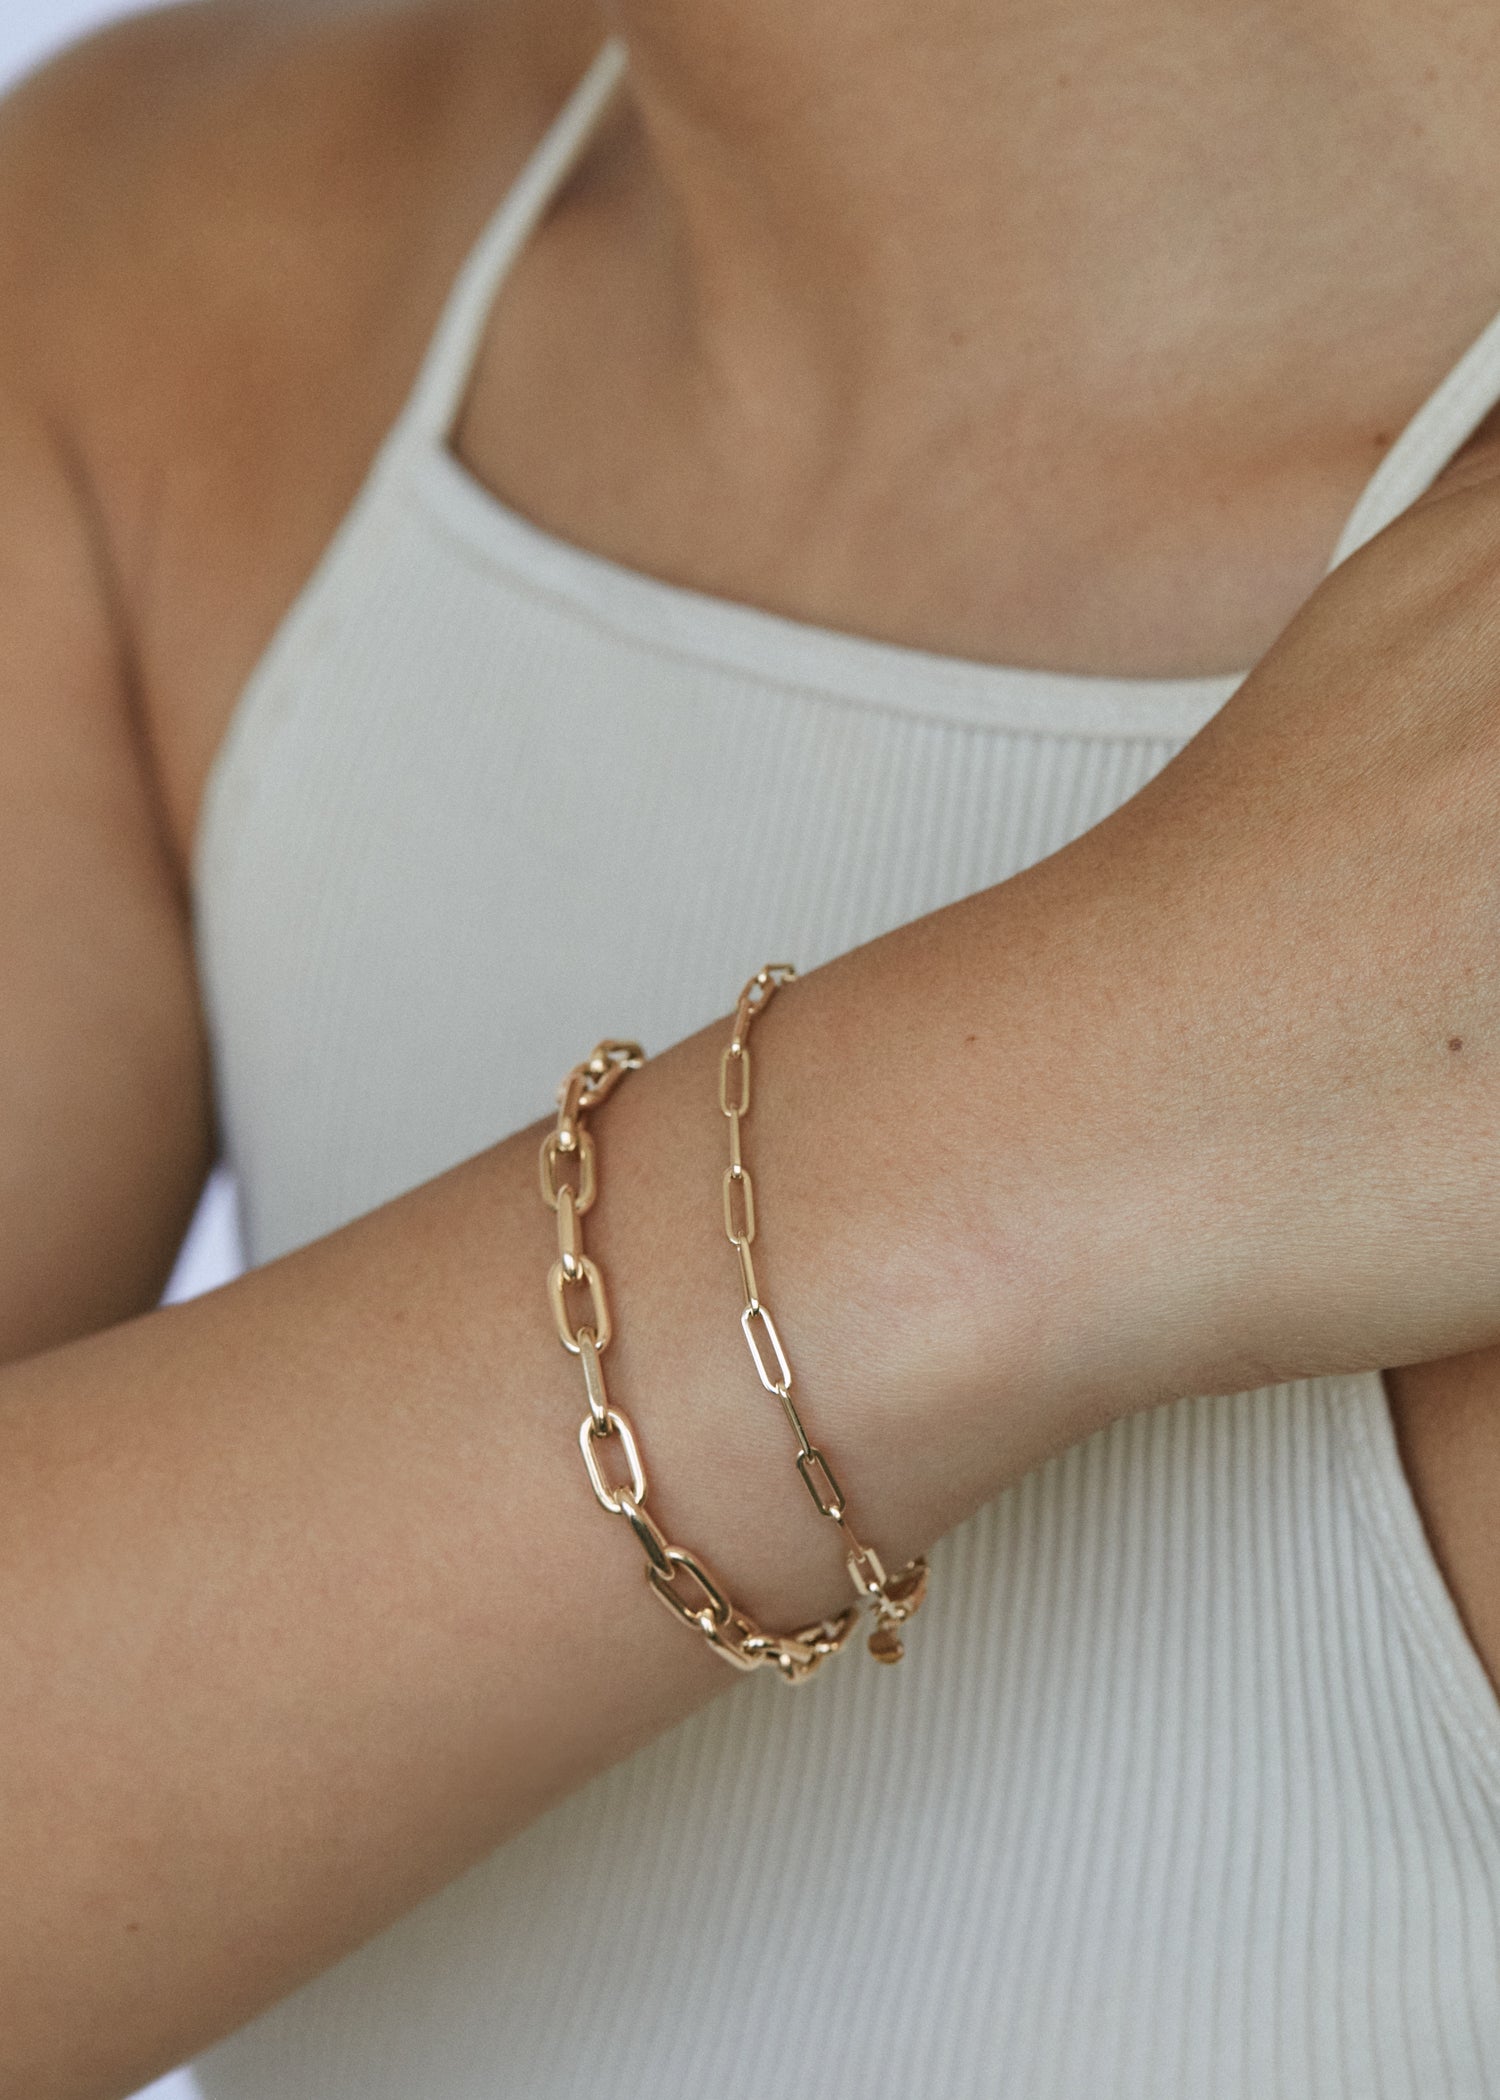 alt="Petite Link Chain Bracelet with mini link chain bracelet"